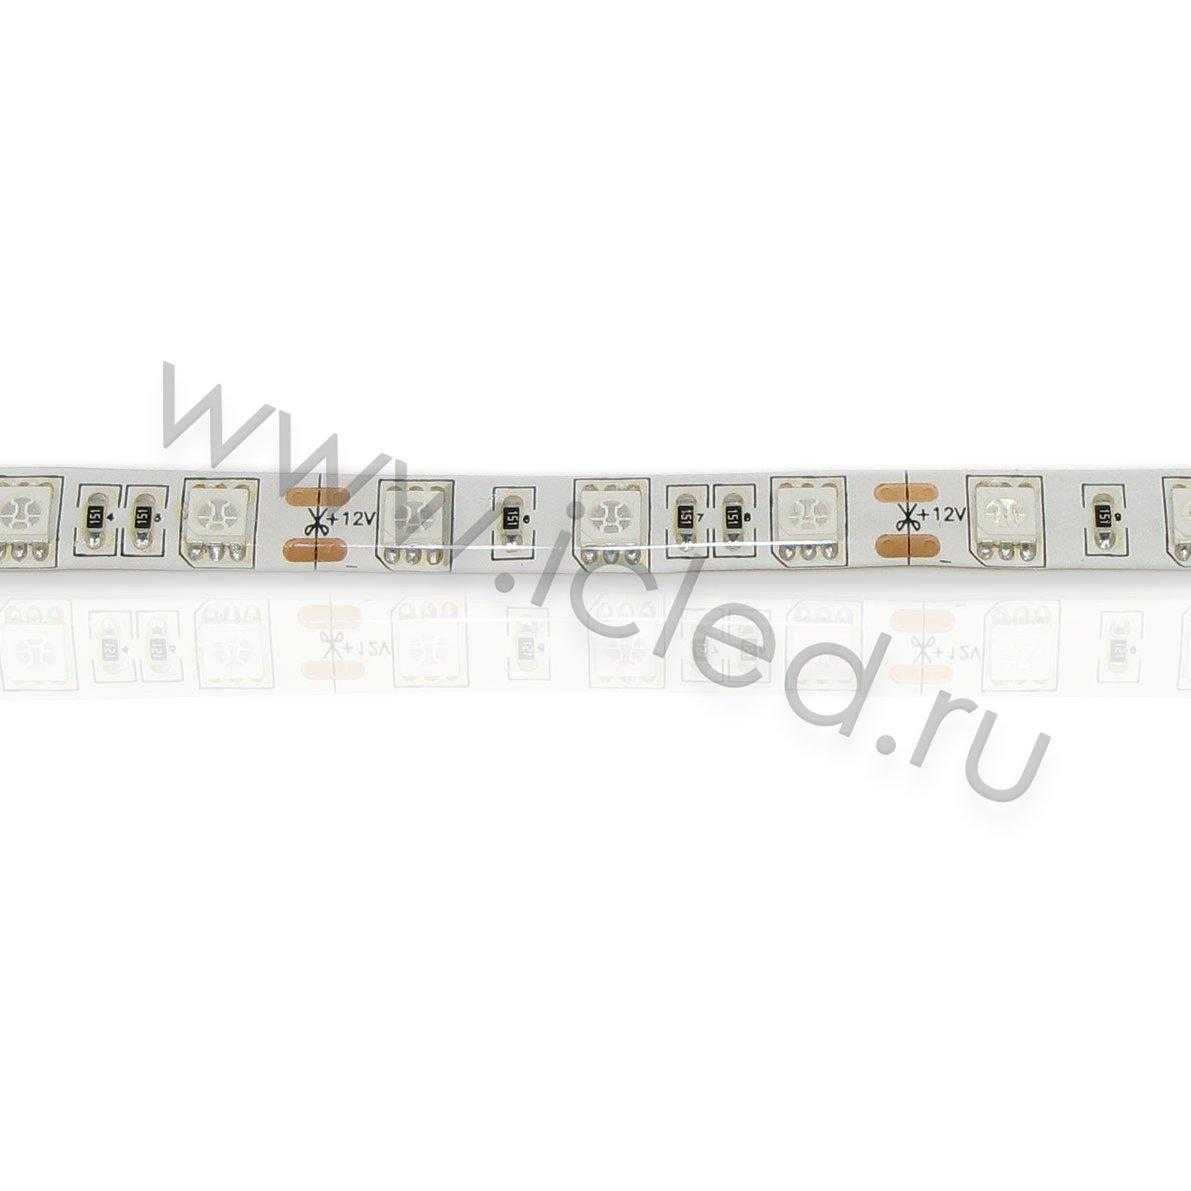 Влагозащищенные светодиодные ленты Светодиодная лента Standart class, 5050, 60led/m, Green, 12V, IP65 Icled